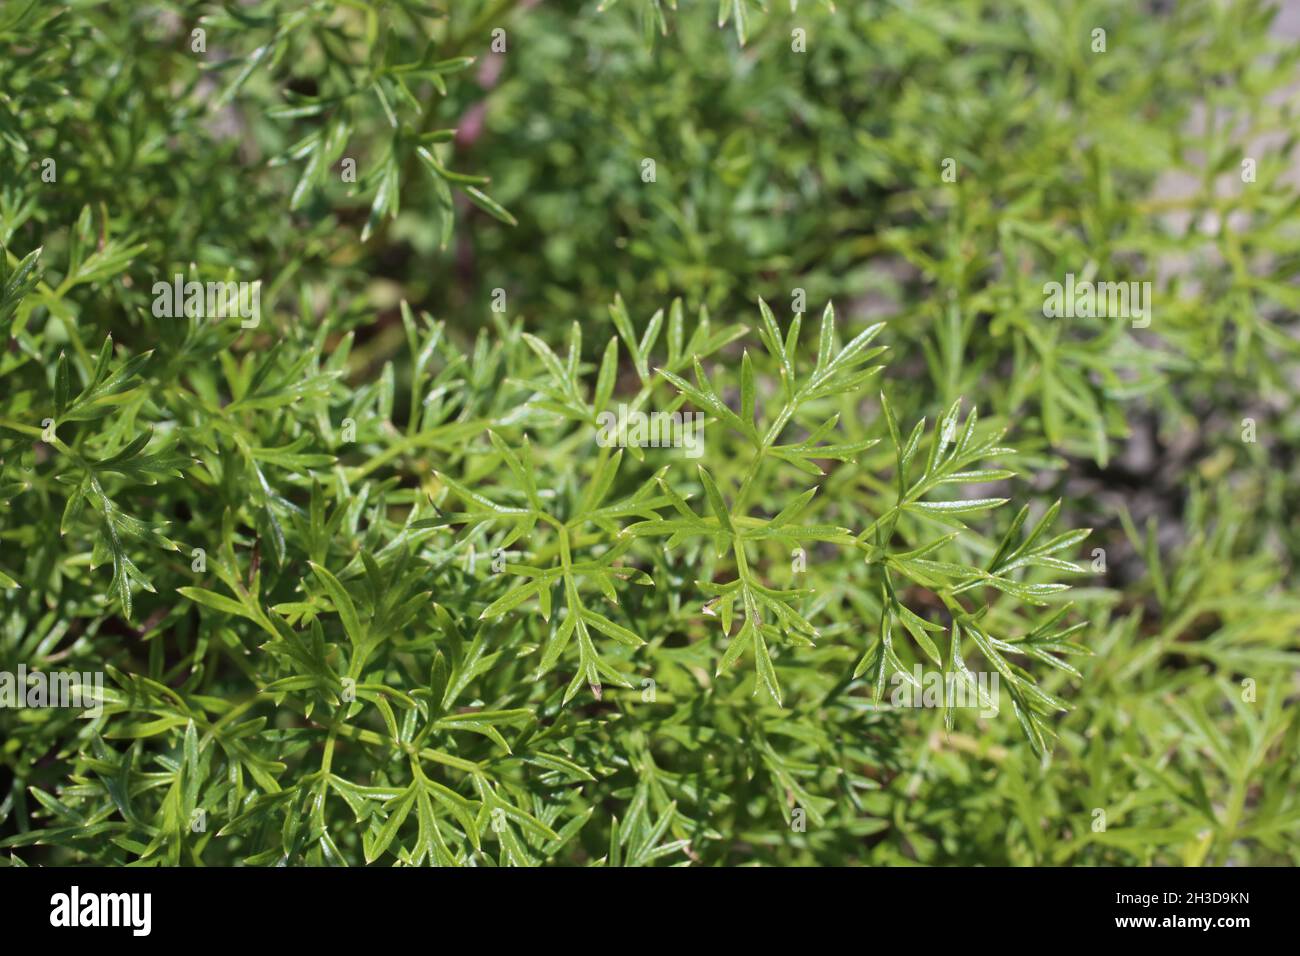 Selinum silaifolium, Cnidium silaifolium, Apiaceae. Wild plant shot in spring. Stock Photo